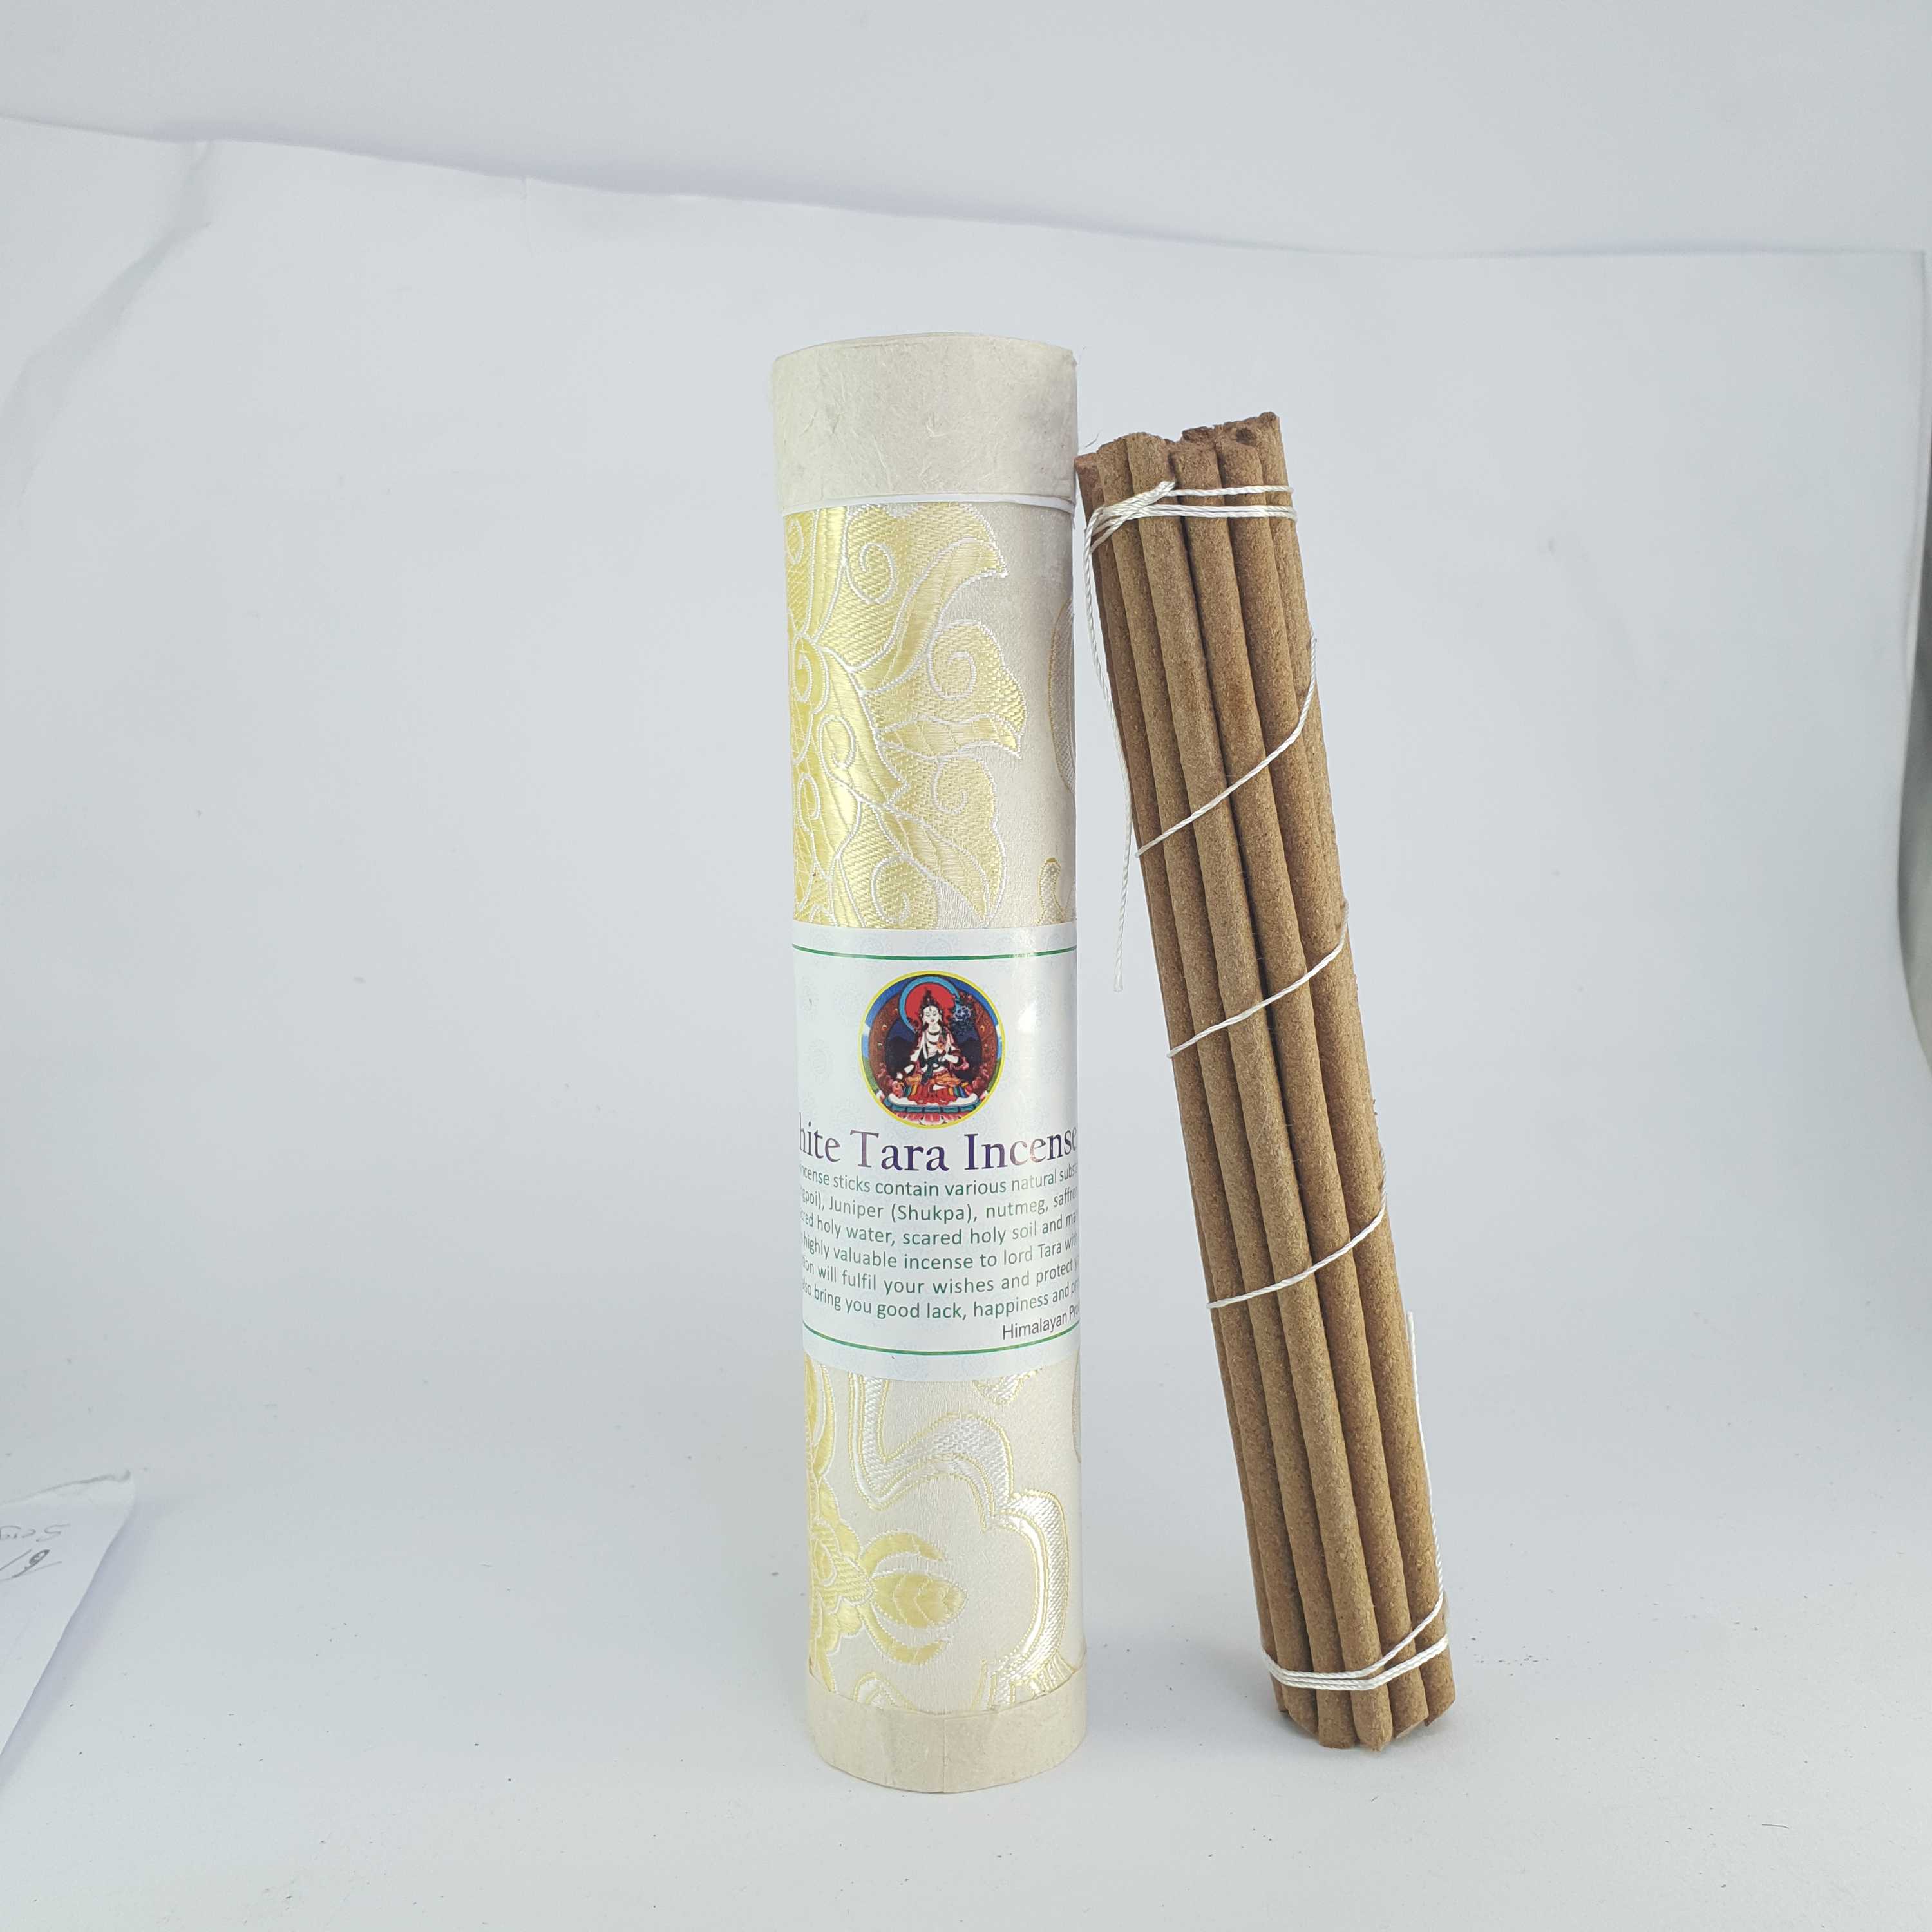 White Tara Buddhist Herbal Incense tube